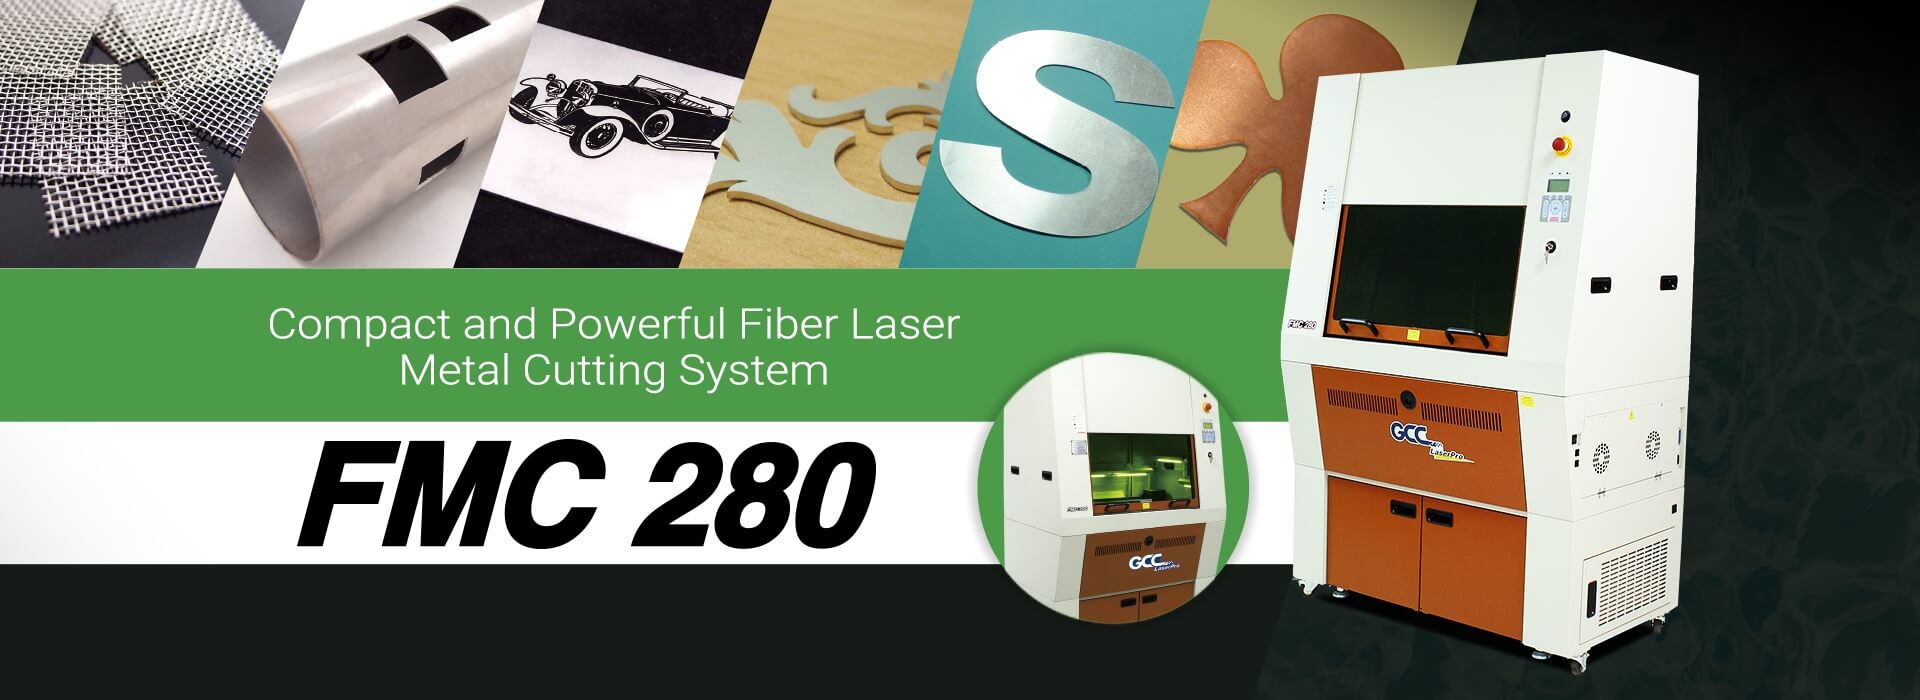 FMC 280 1.5KW Fiber Laser Cutter